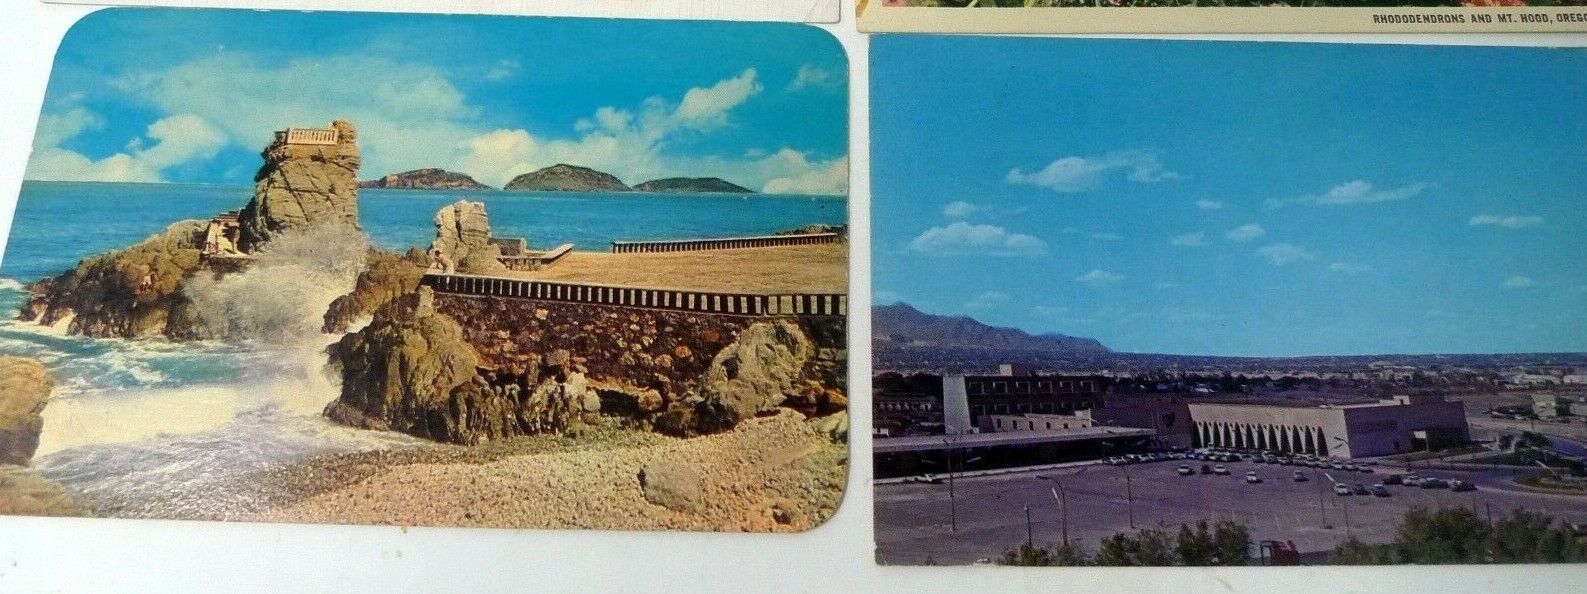 Postcard VTG Lot 2 1967 MEXICO Panoramica Del Hotel Camino Real El Mirador Mazat